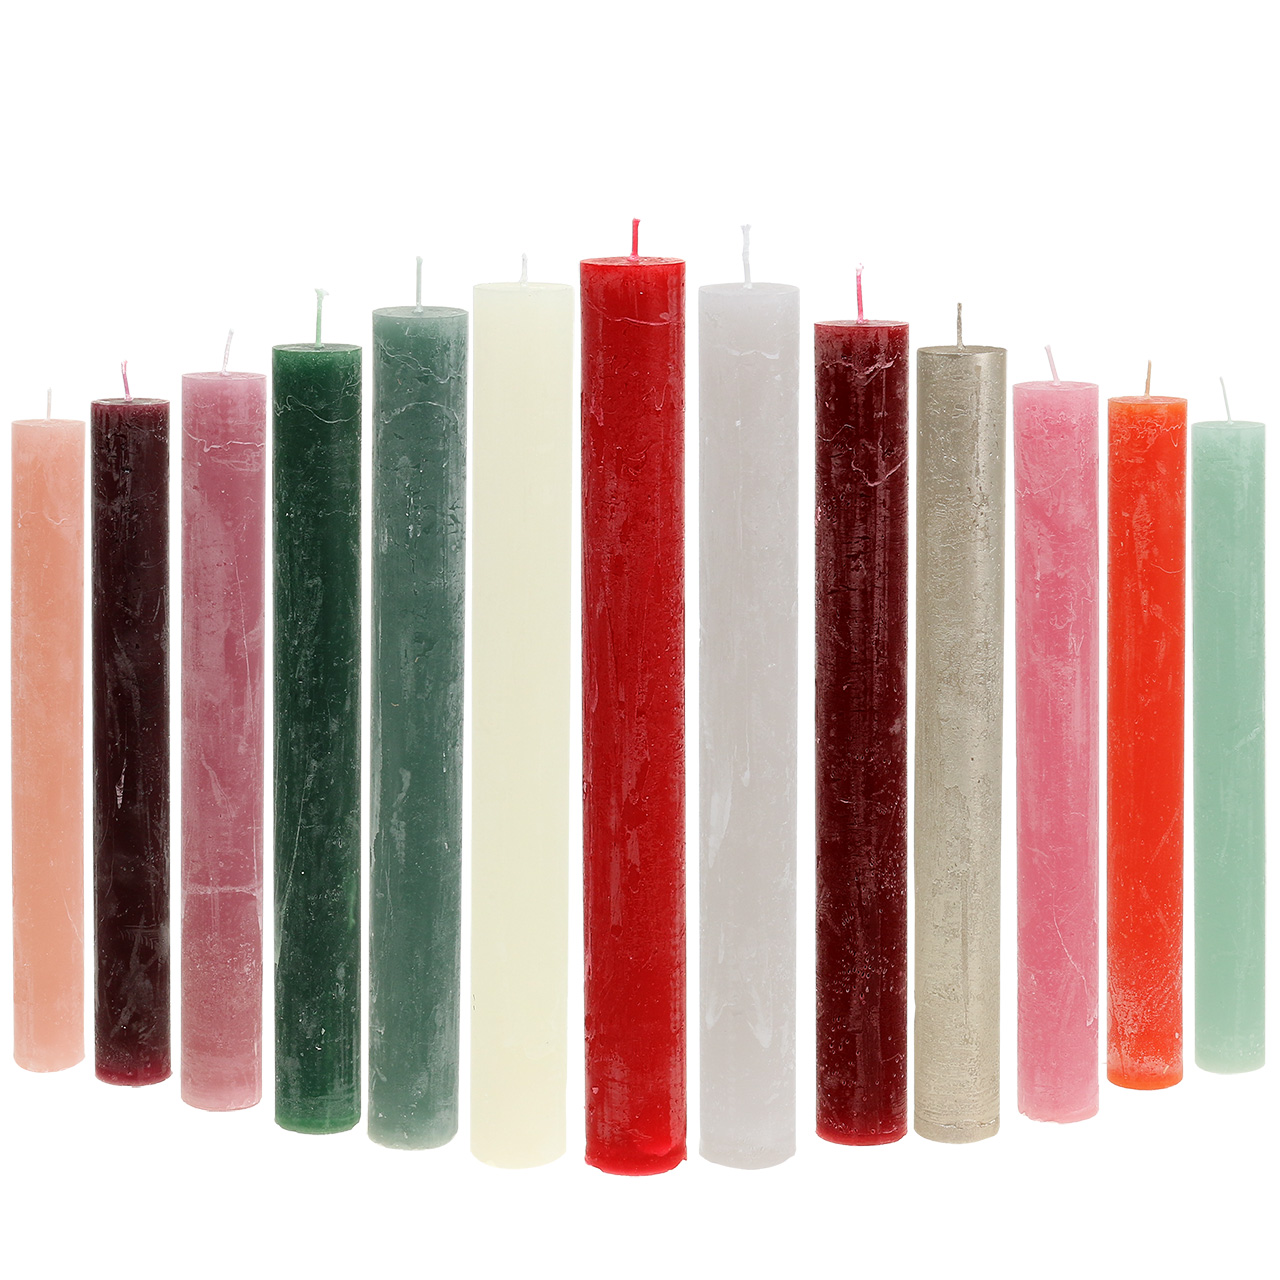 Conische kaarsen gekleurd door verschillende kleuren 34mm x 240mm 4st